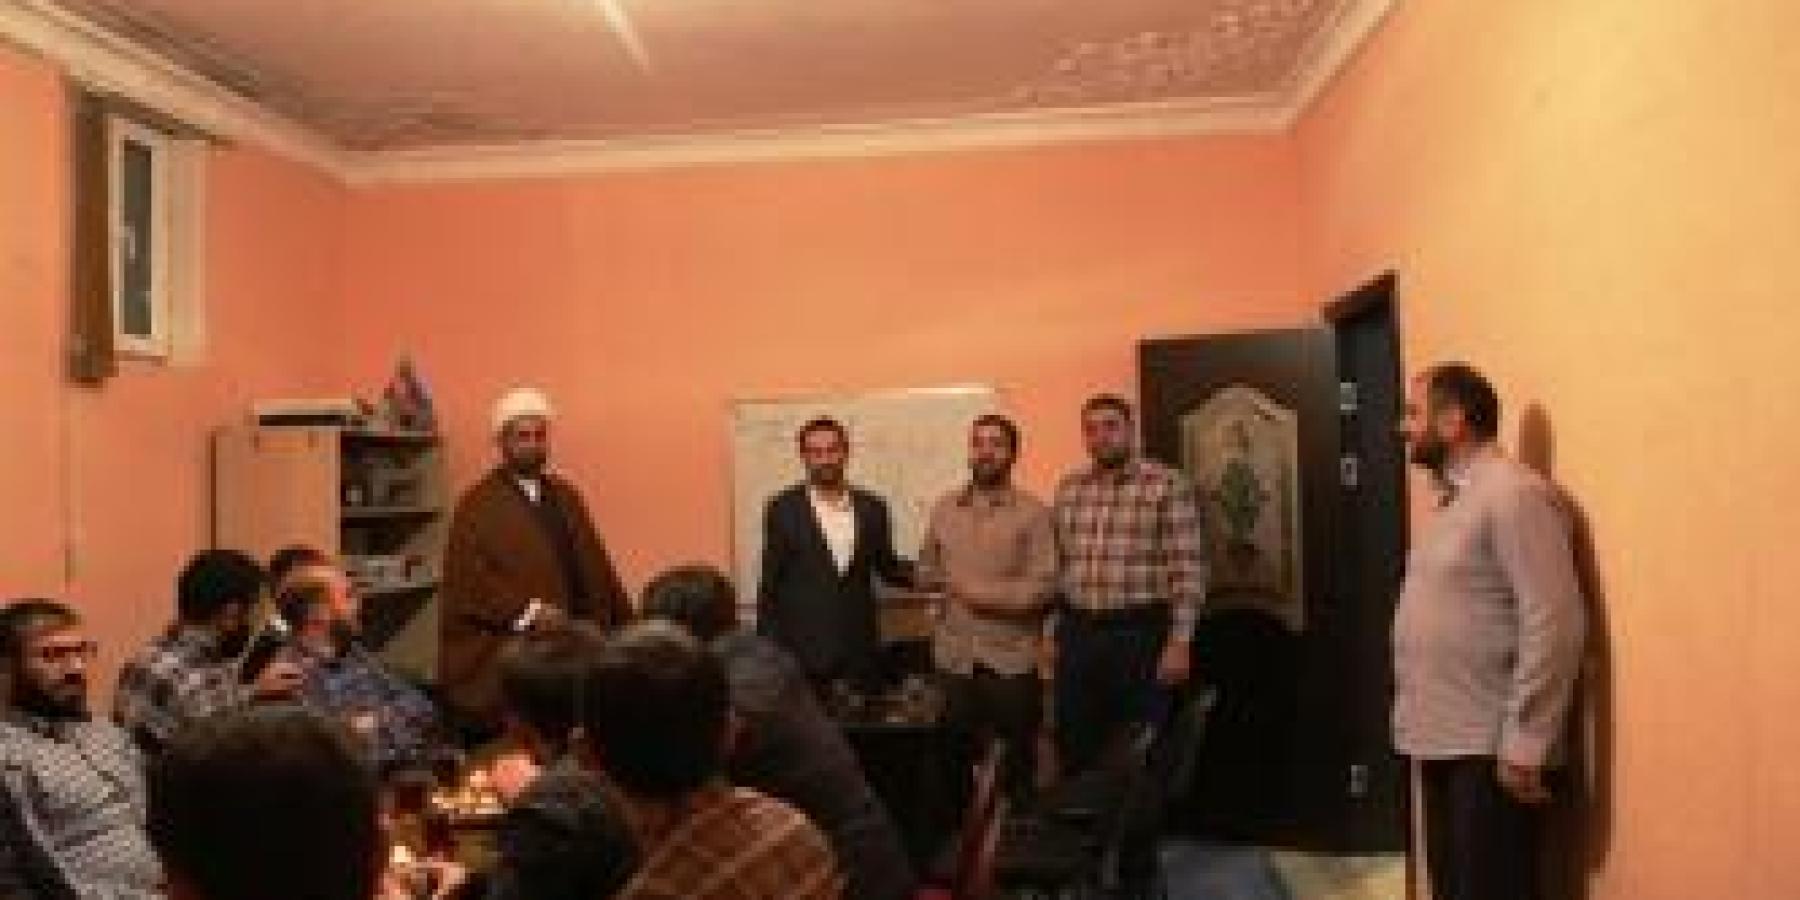 وفد العتبة العلوية المقدسة الى أذربيجان يزور مؤسسة الحكمة للدراسات الاسلامية في العاصمة باكو